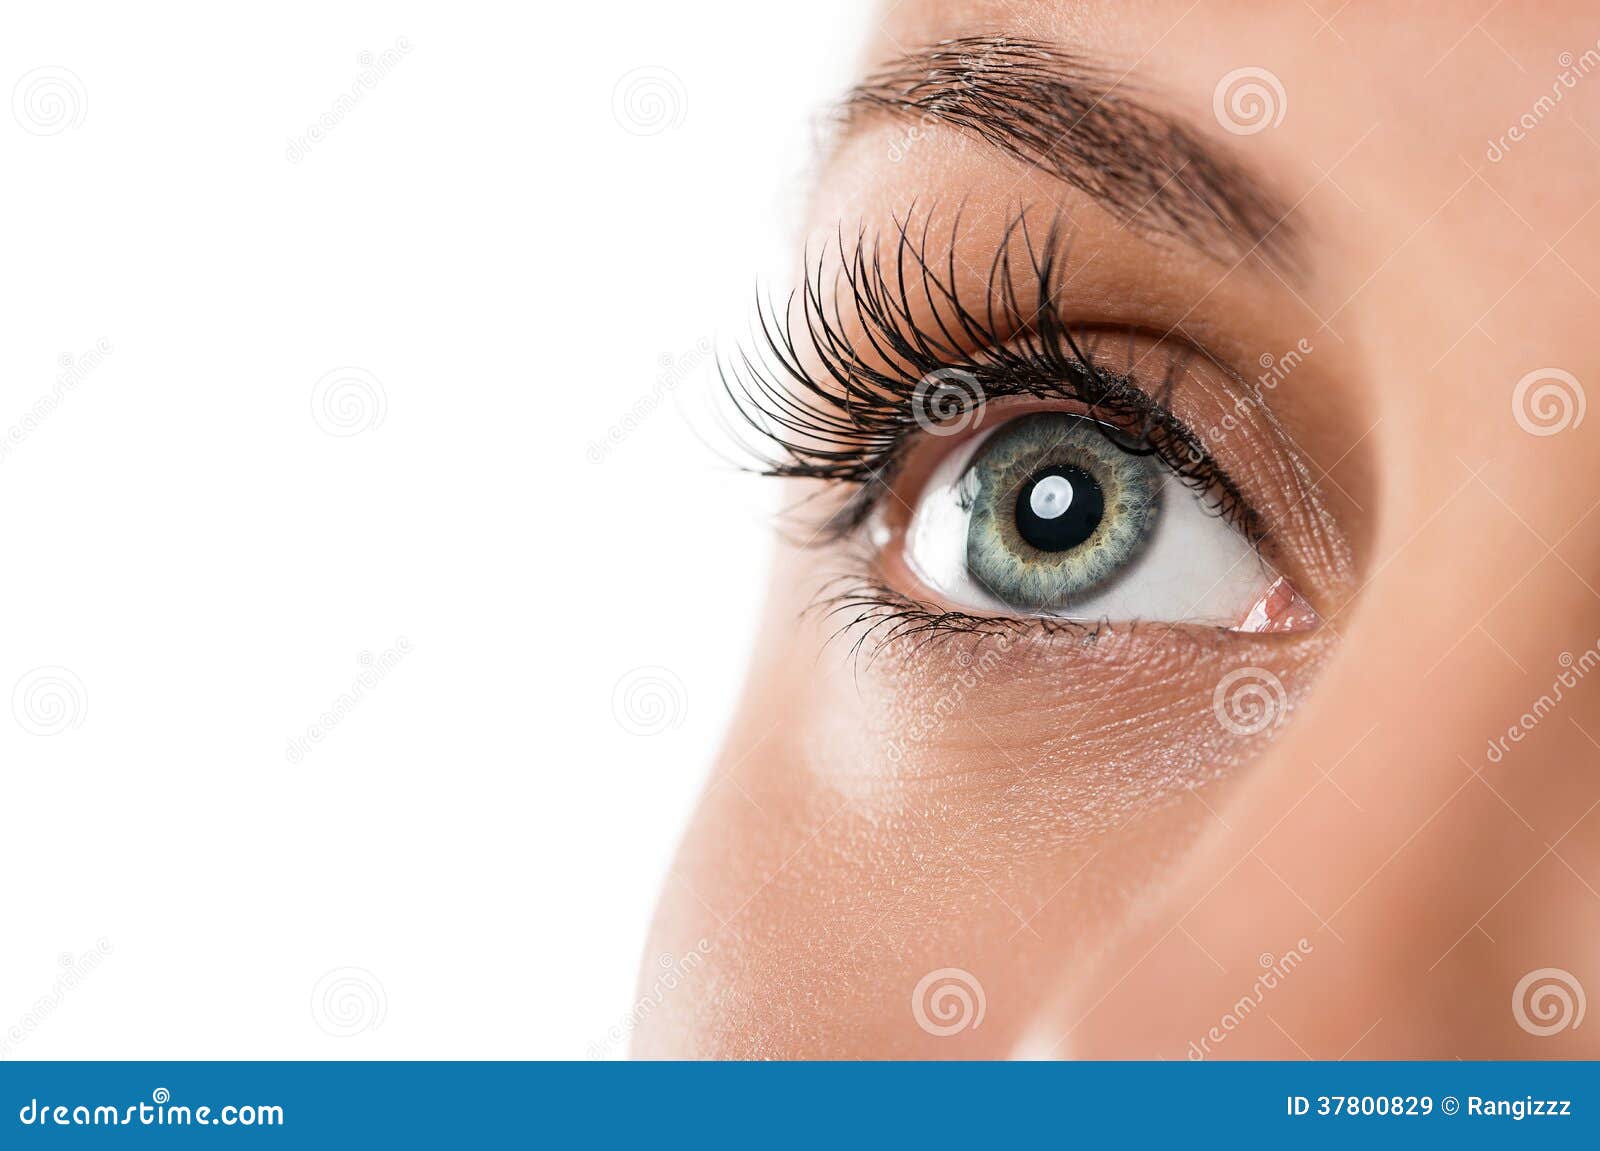 natural female eye